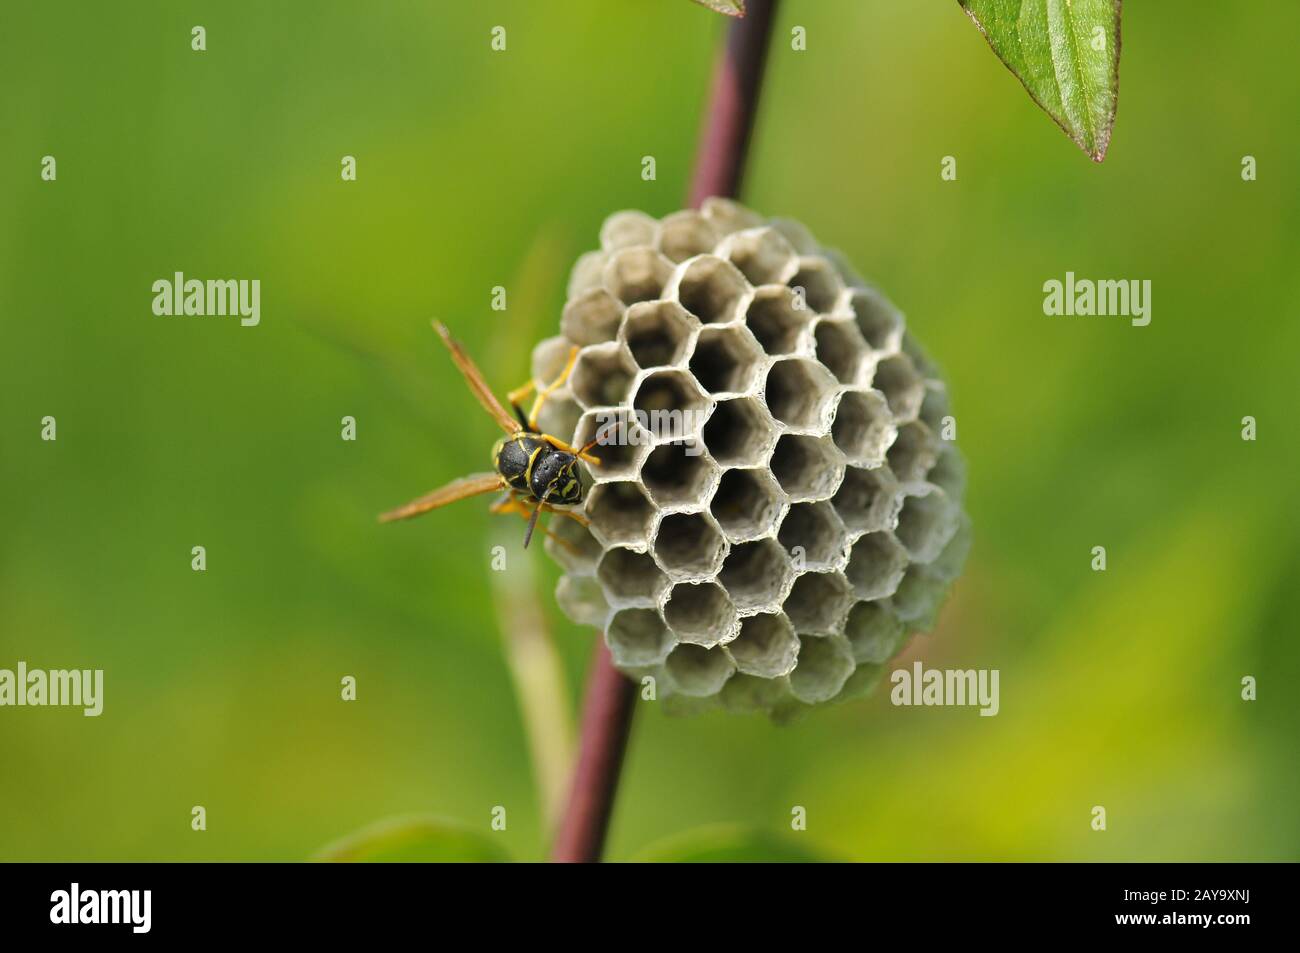 Gallic field wasp Stock Photo